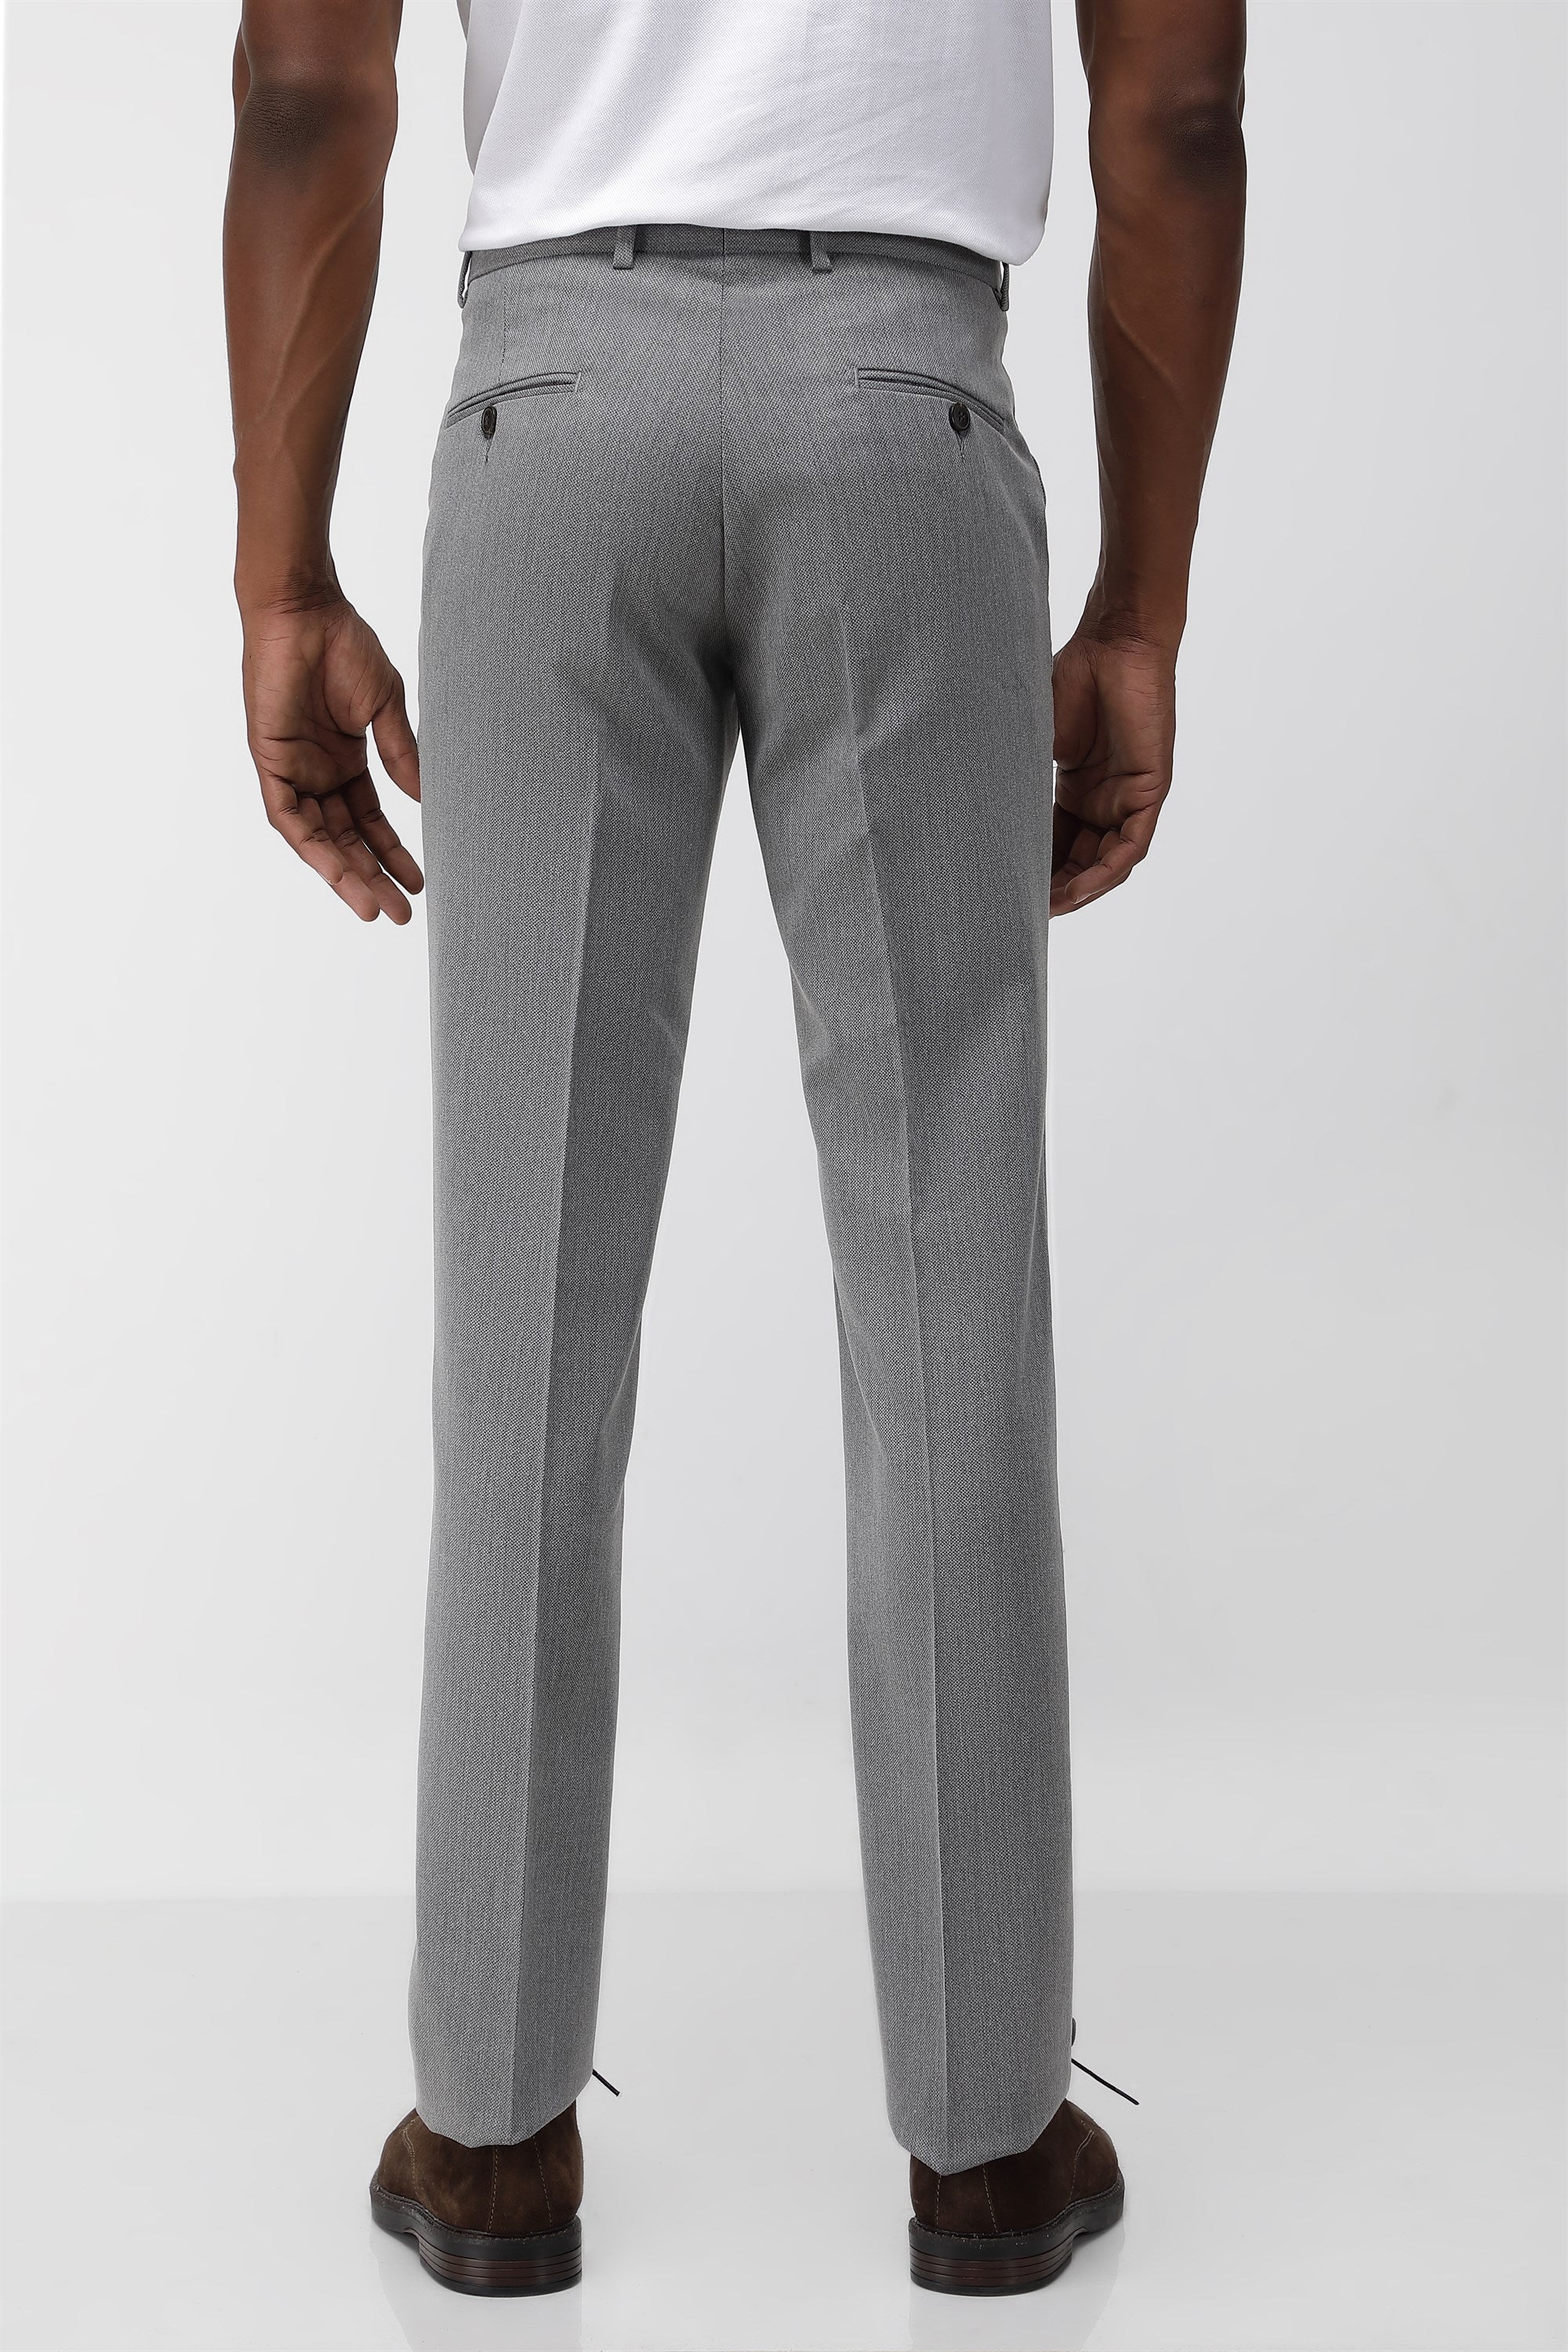 Men's Grey SUIT TROUSERS Plain Atelier Suits | Reiss USA